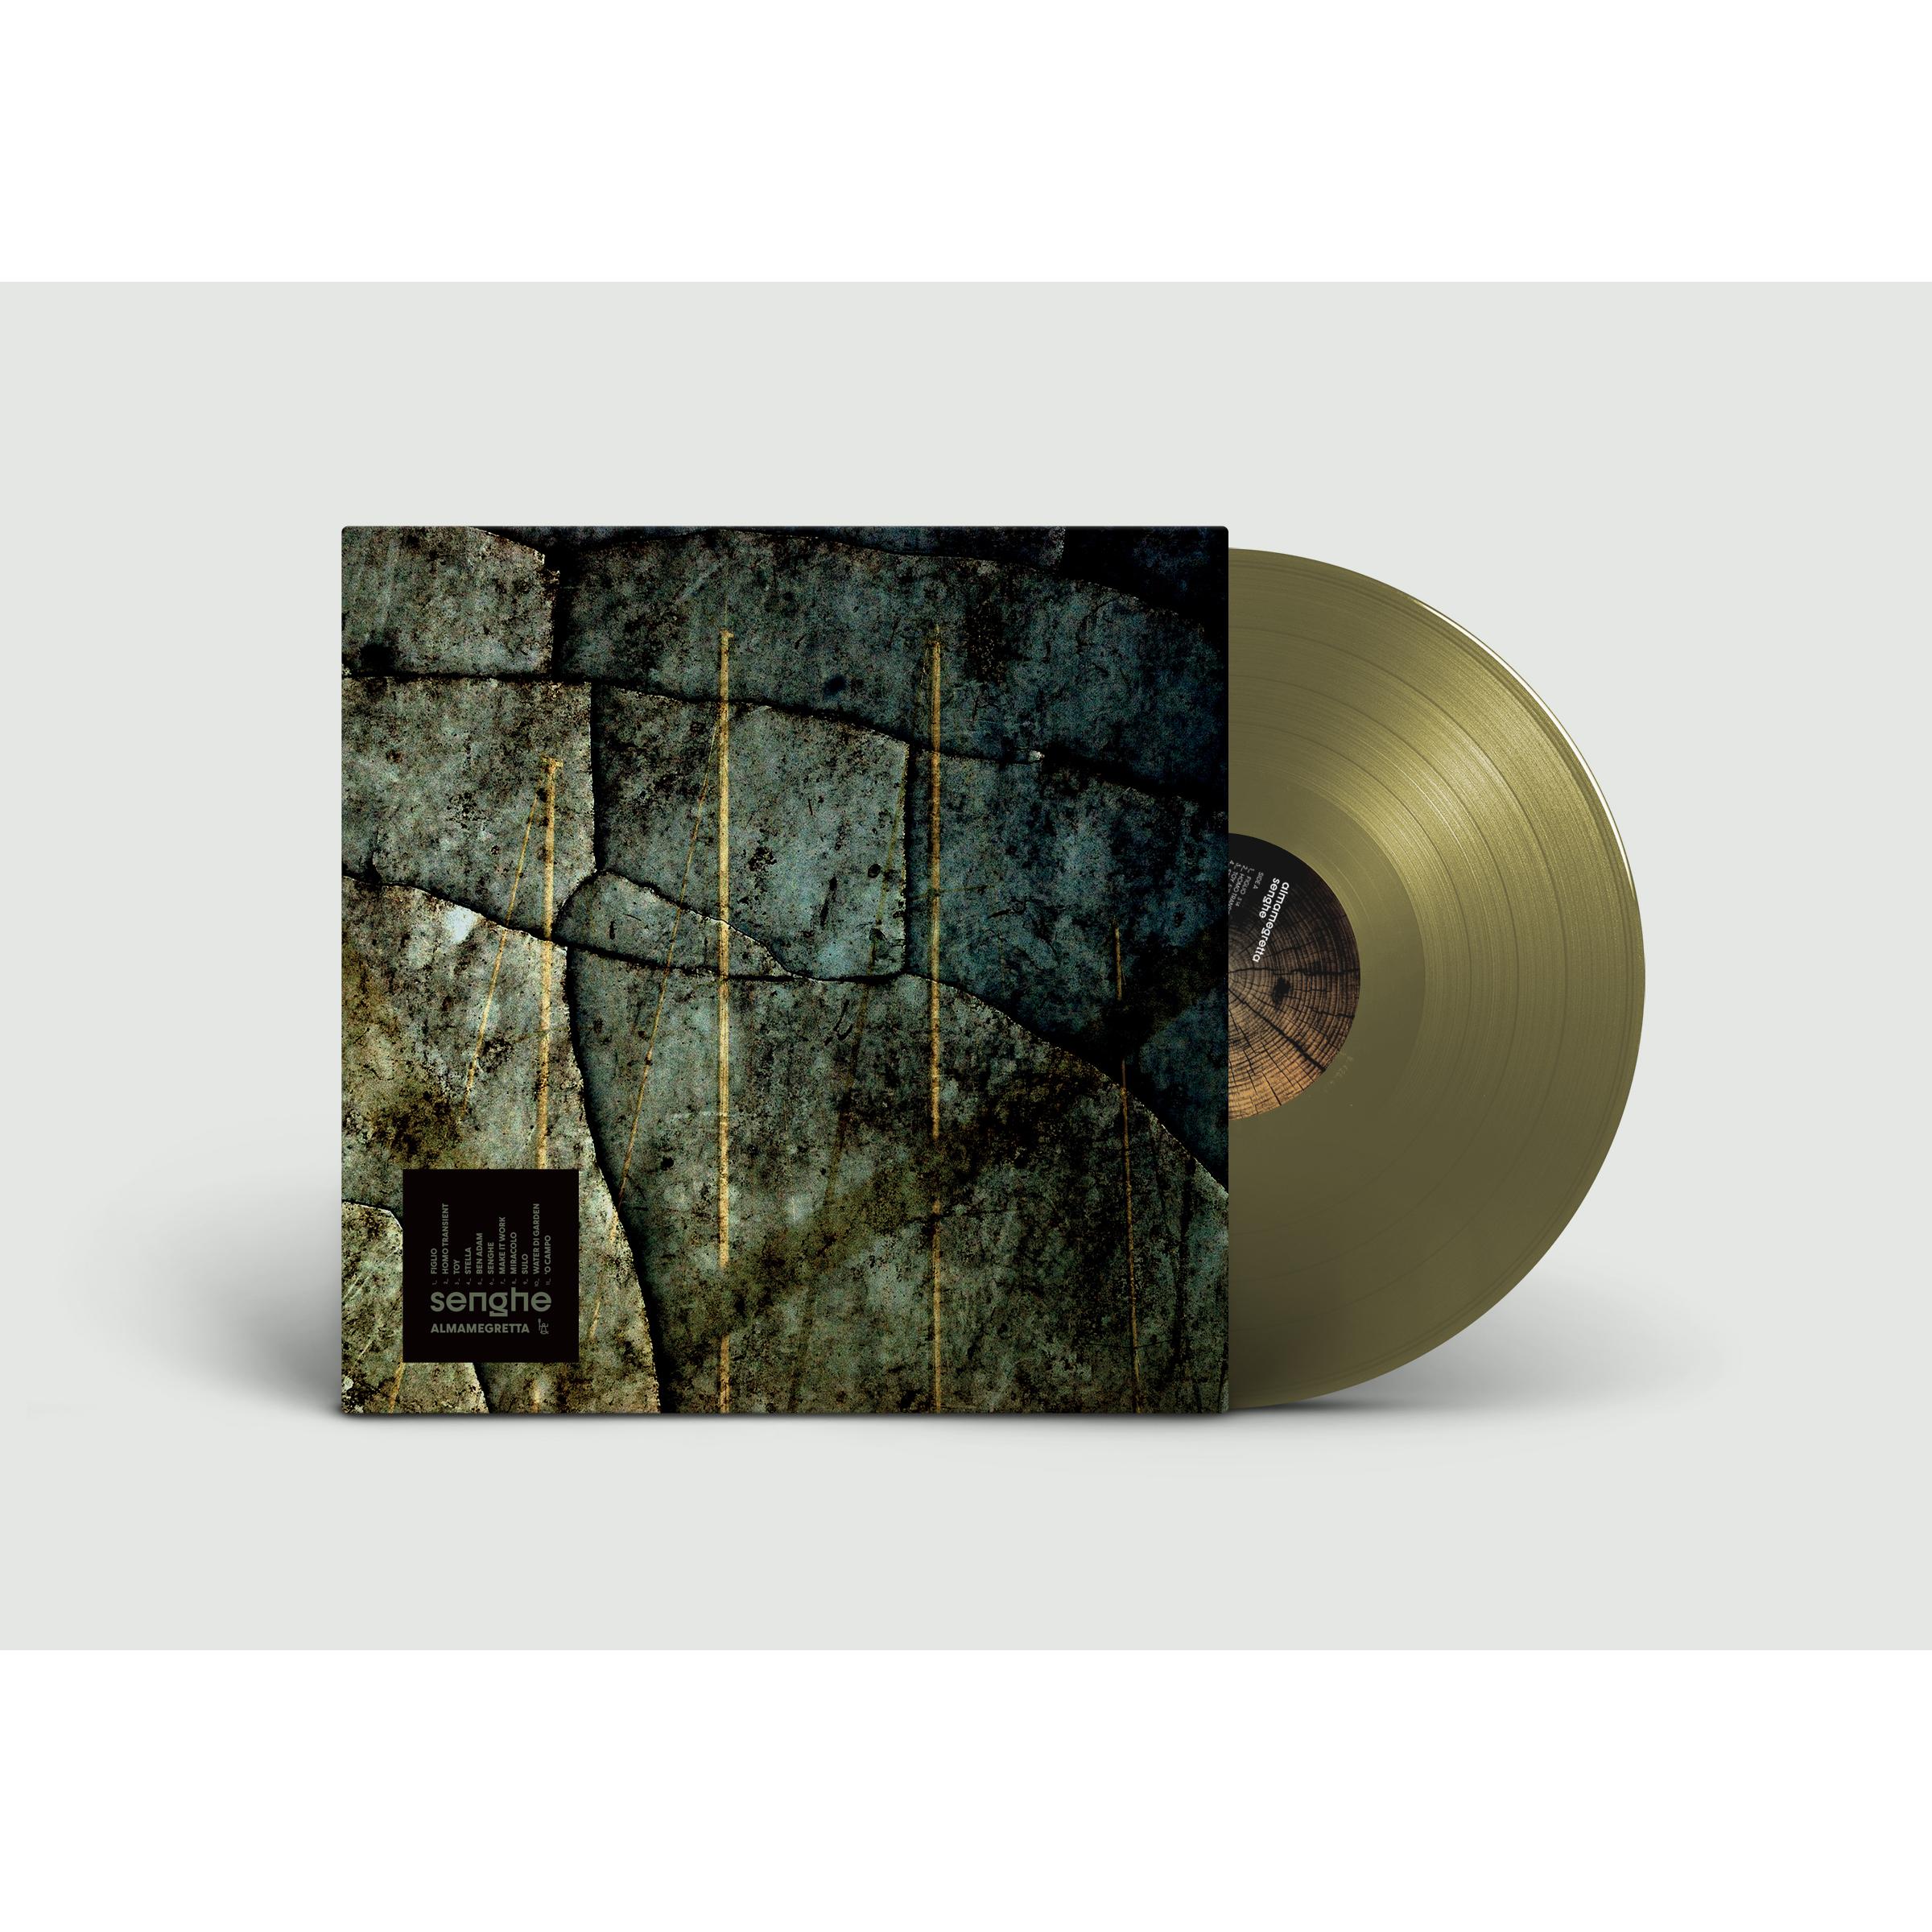 SENGHE - LP 180 GR. VINILE GOLD - 550 COPIE NUMERATE LTD. ED.